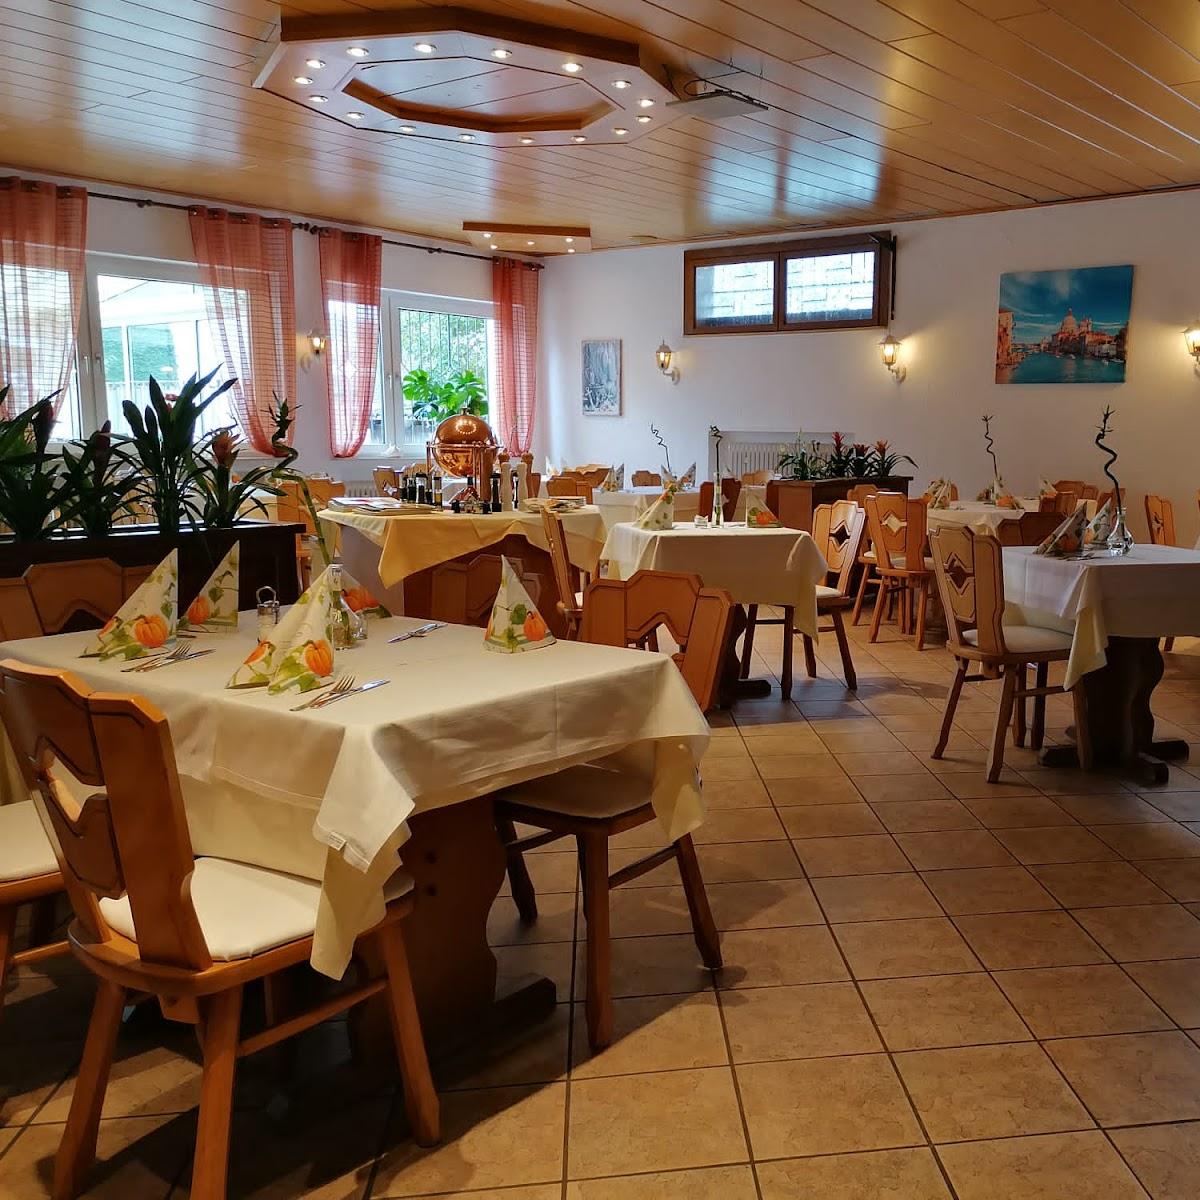 Restaurant "Ristorante Marino" in Allendorf (Lumda)